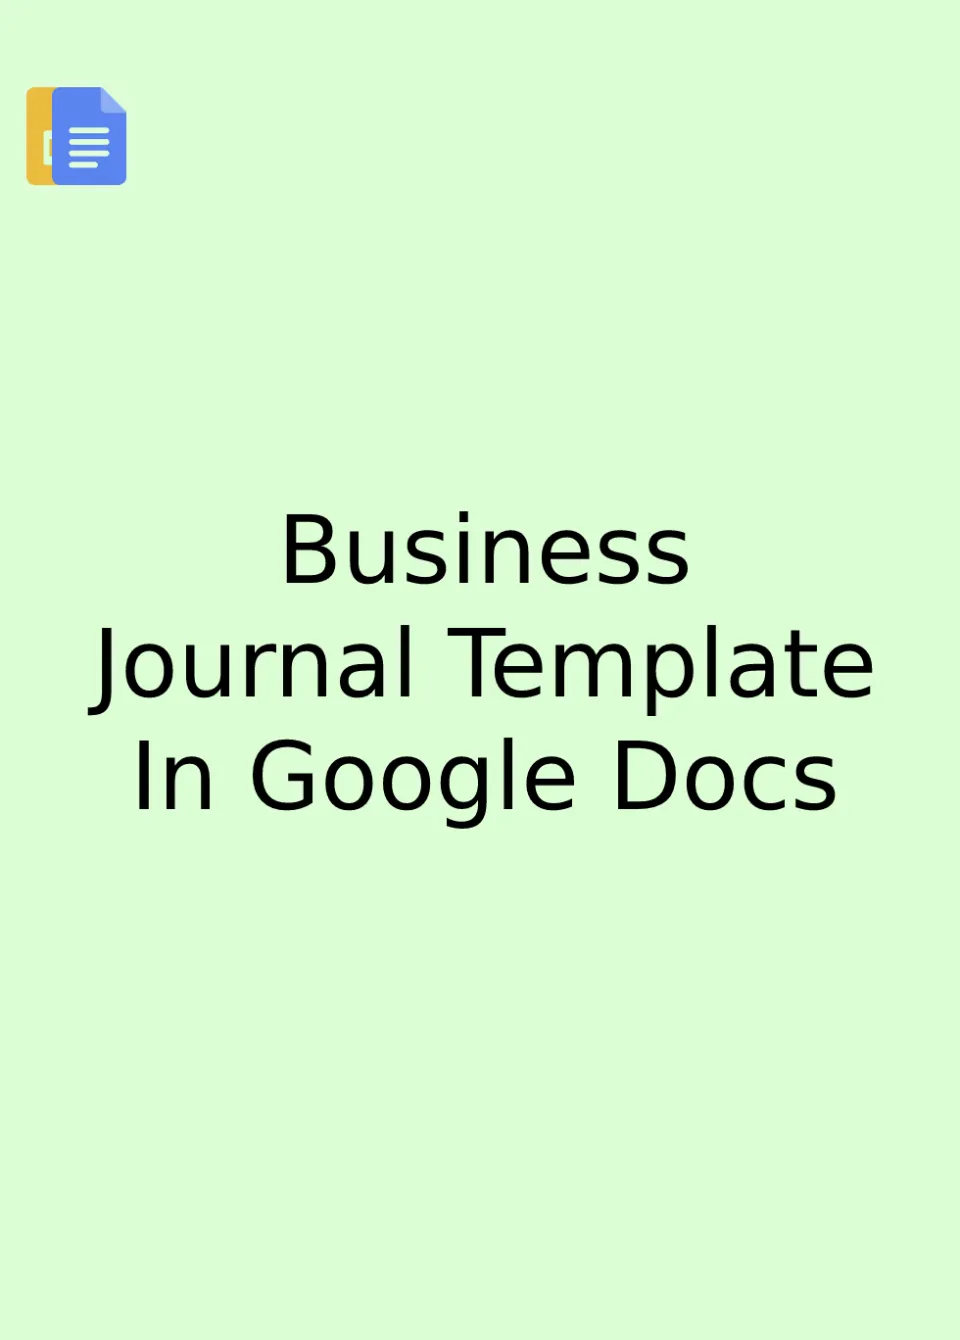 Business Journal Template Google Docs